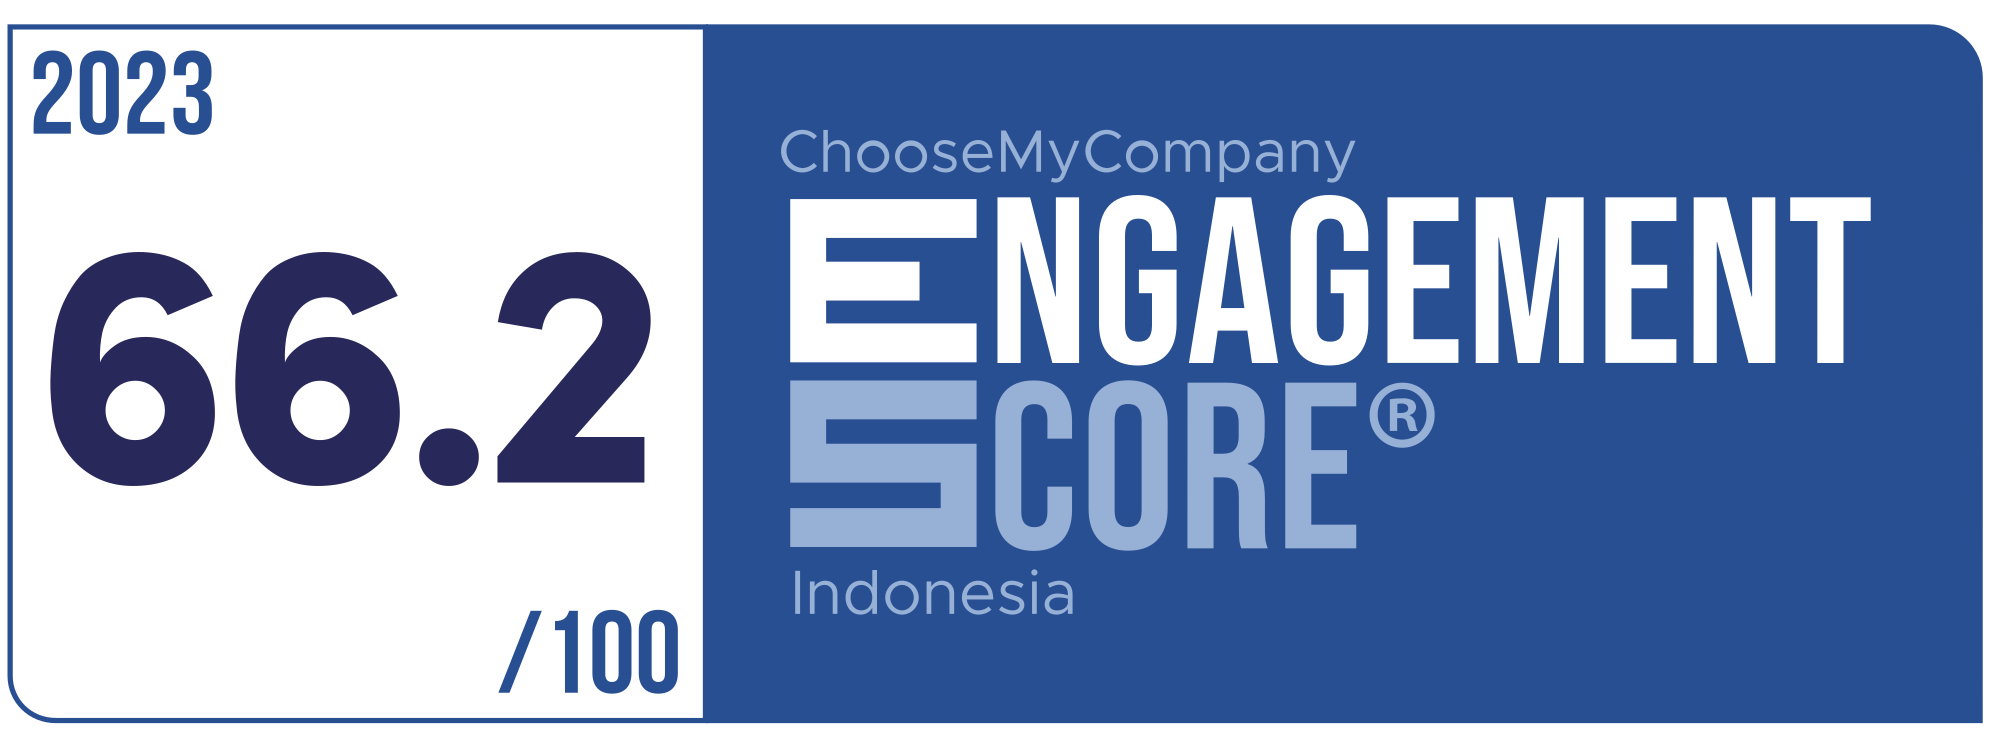 Label Engagement Score 2023 Indonesia